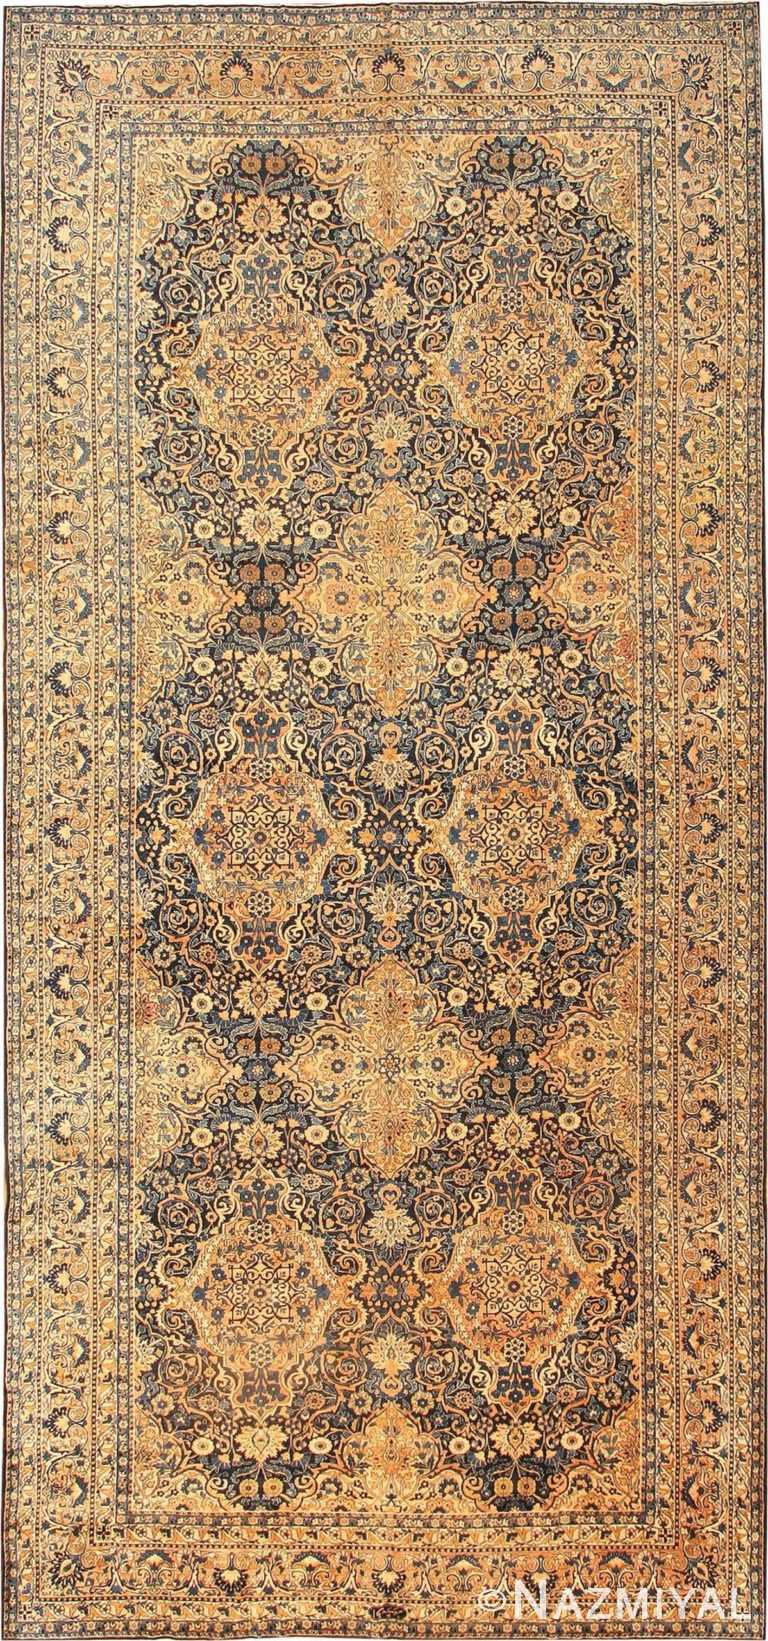 Antique Kerman Persian Rug 42151 Detail/Large View